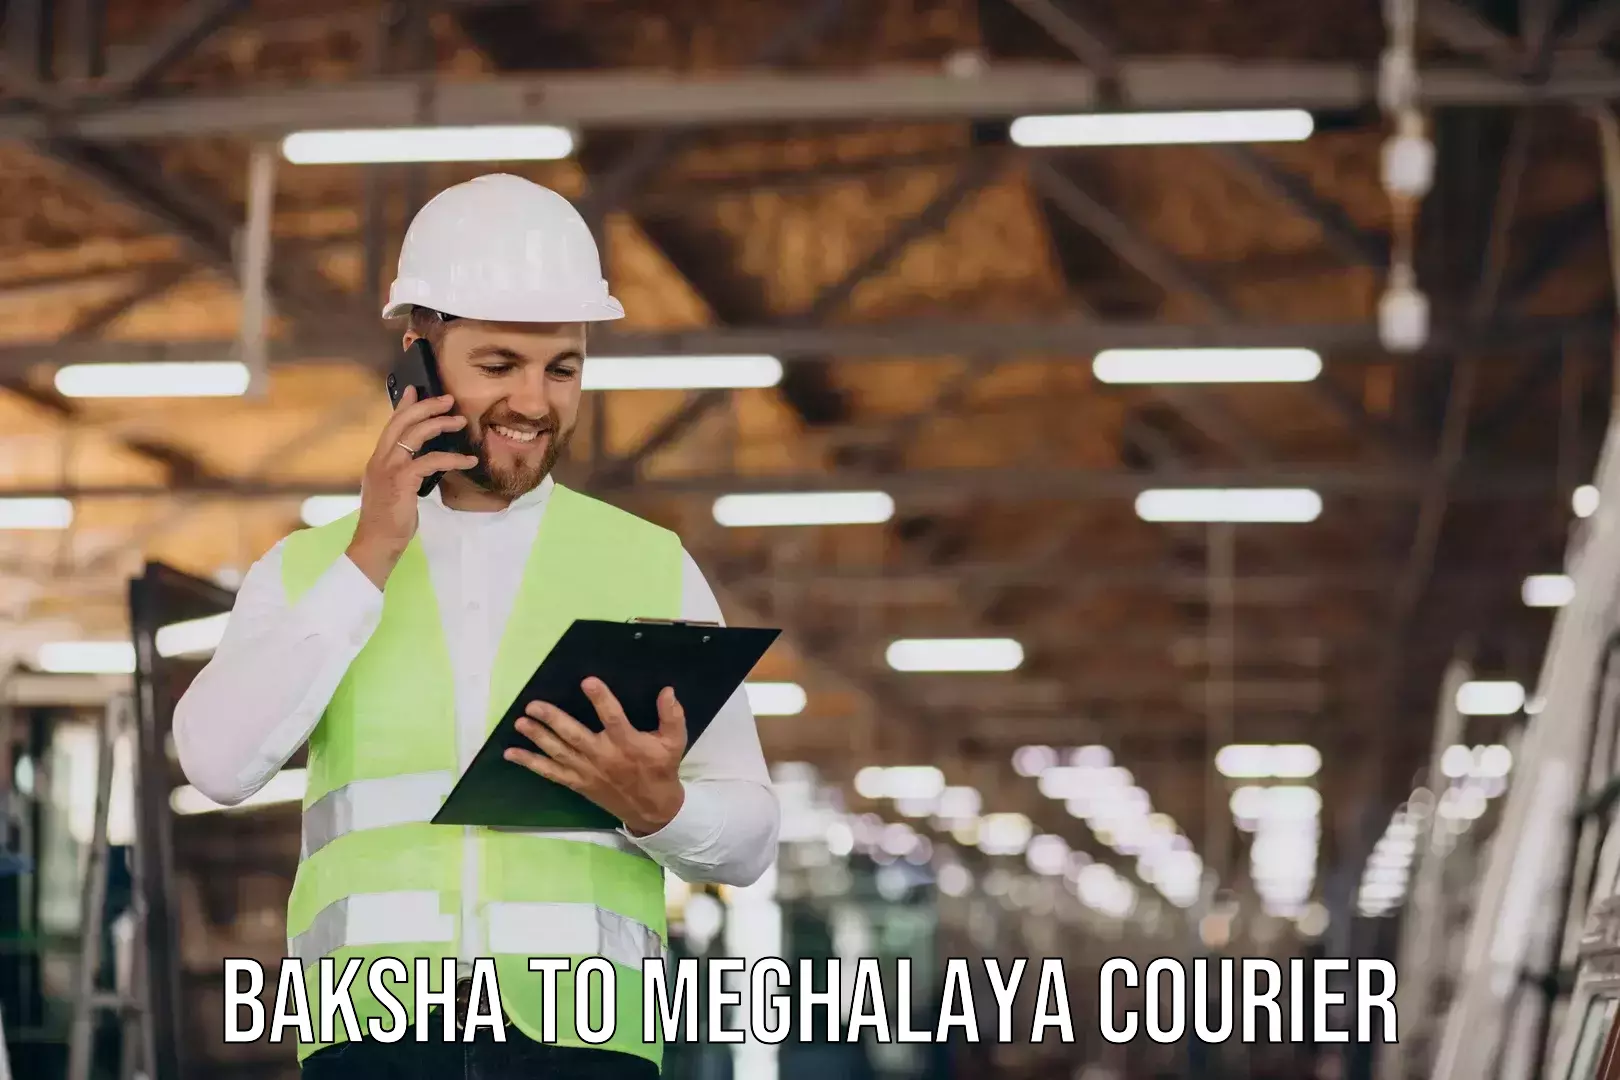 Trusted moving company Baksha to Meghalaya